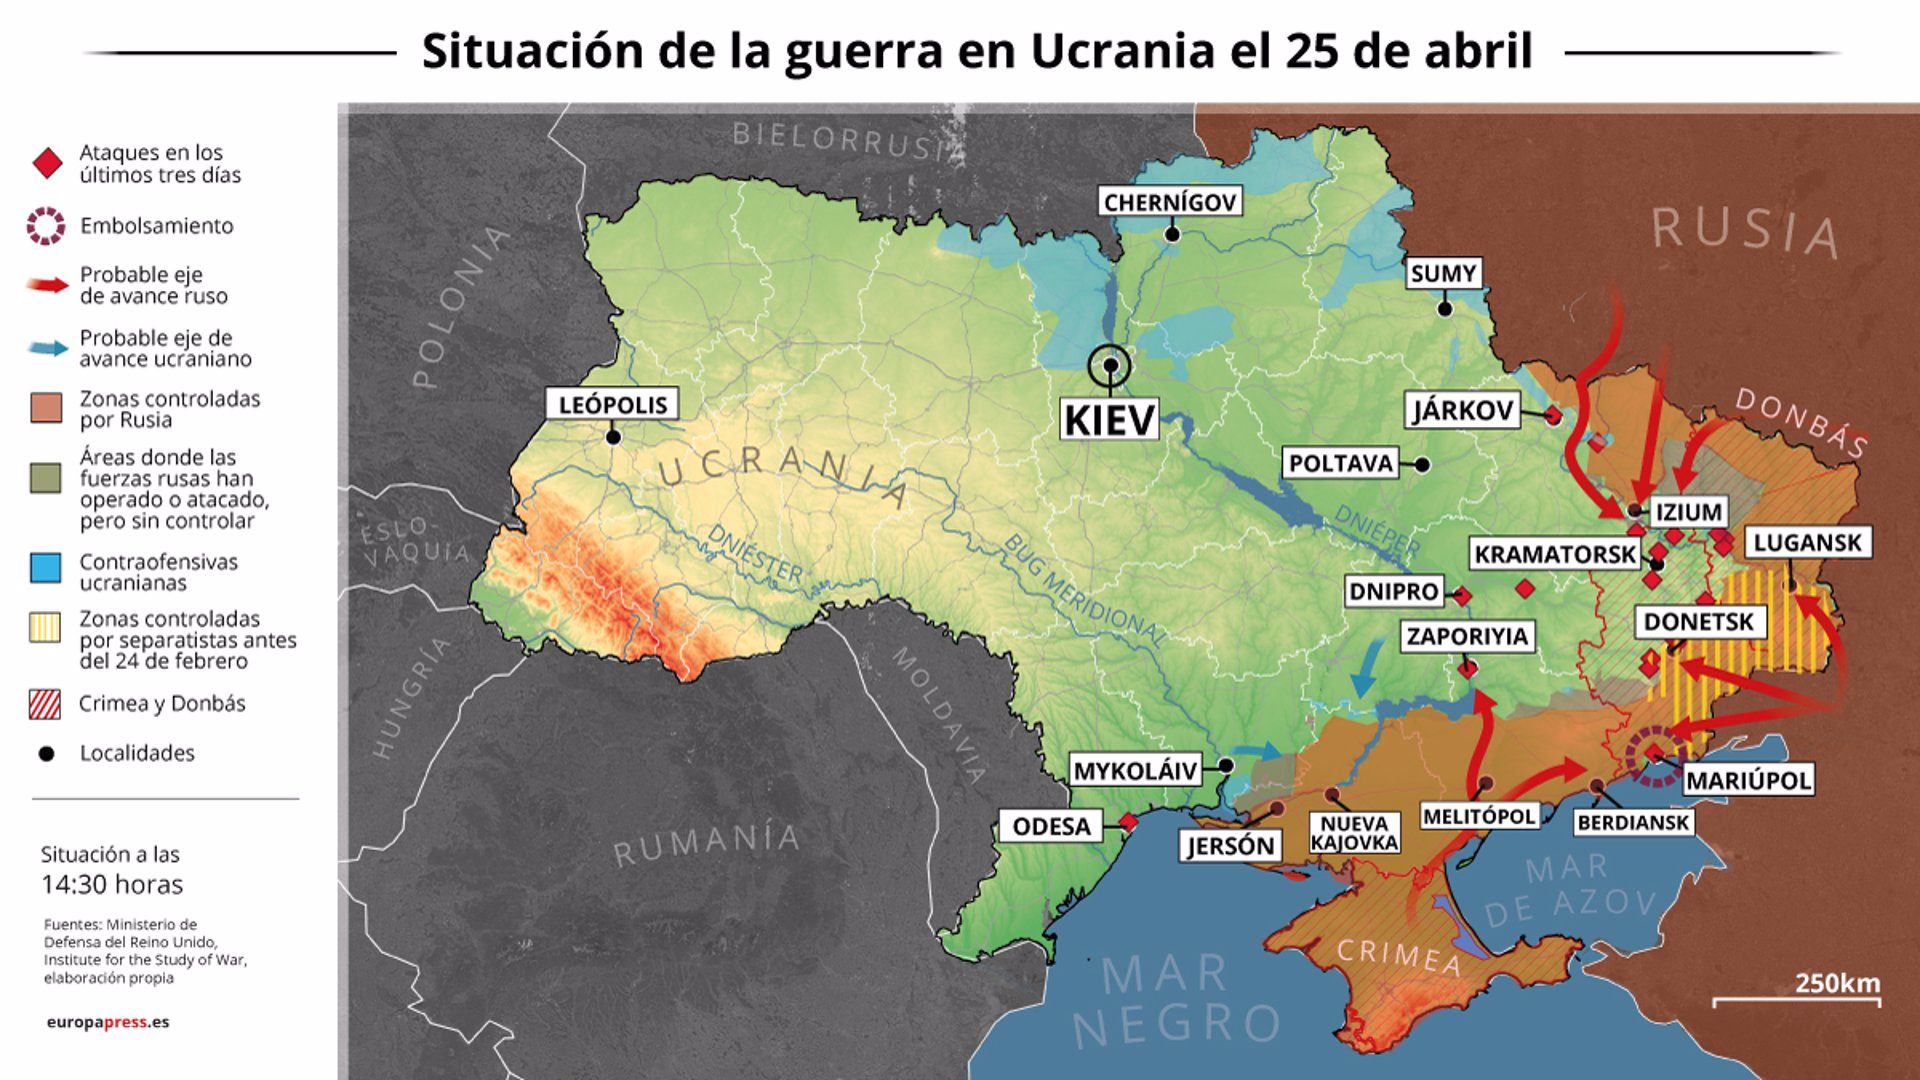 Mapa con la situación de la guerra en Ucrania el 25 de abril